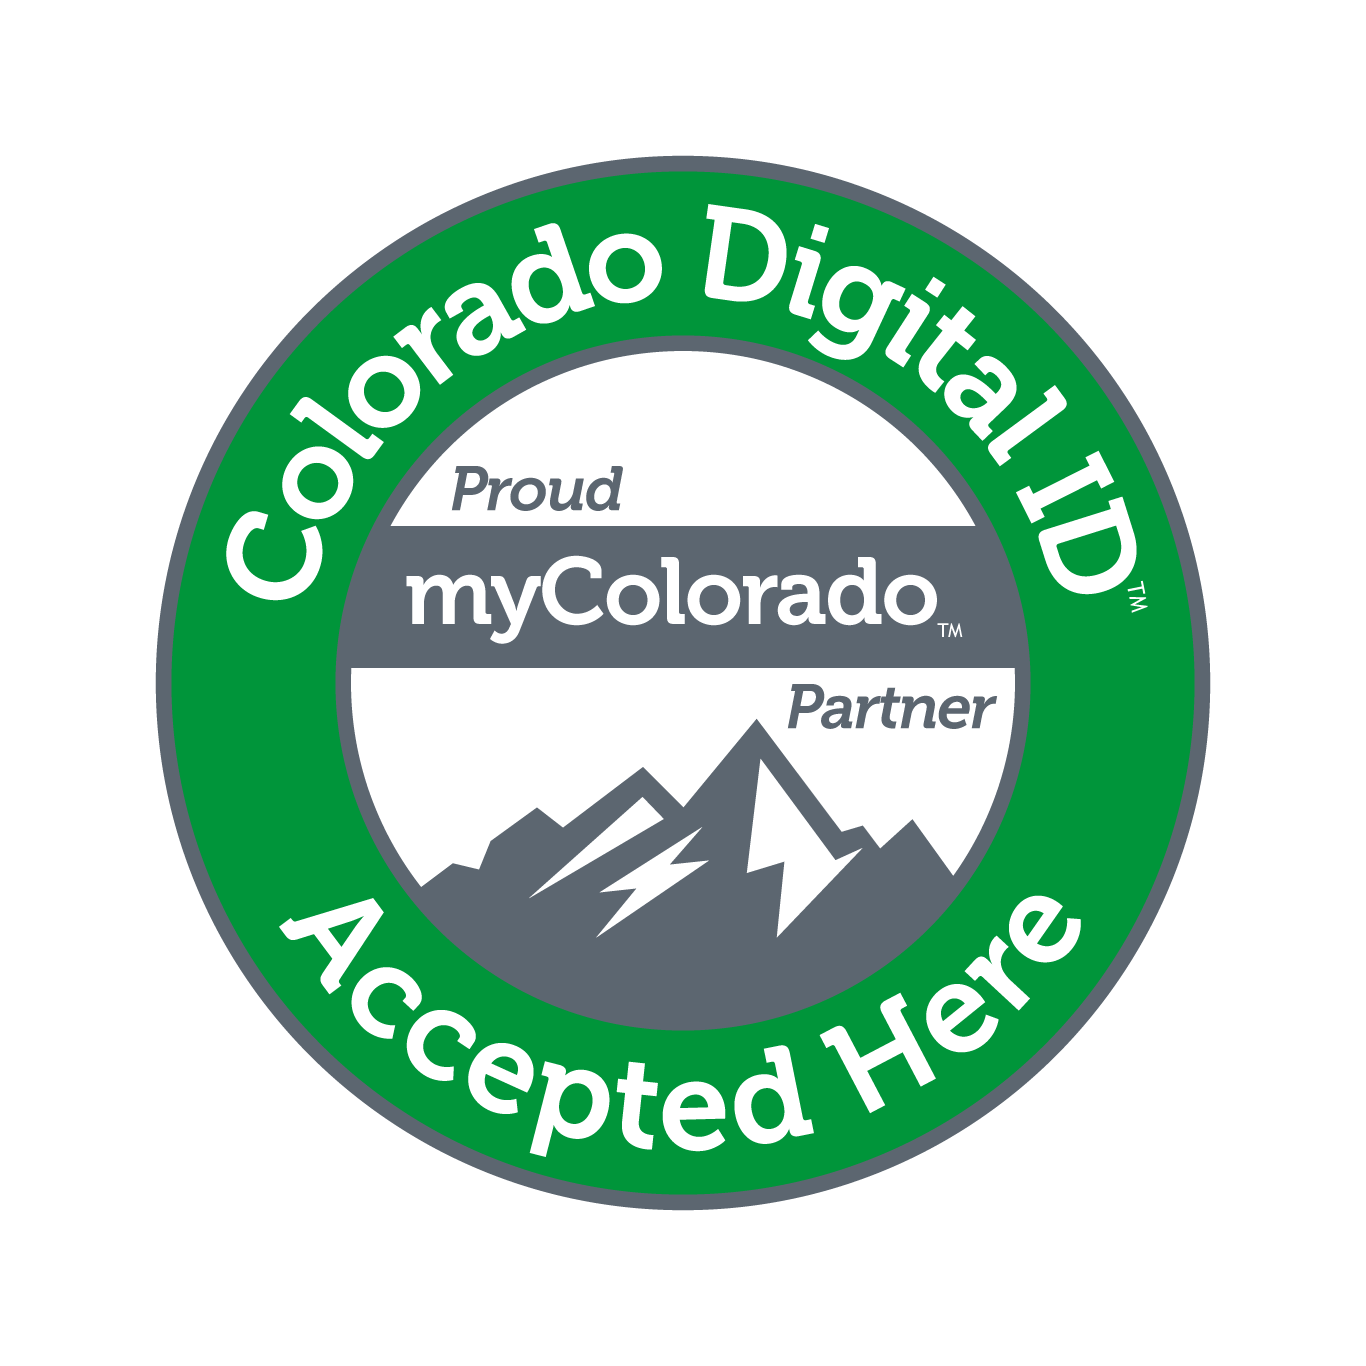 Colorado Digital ID